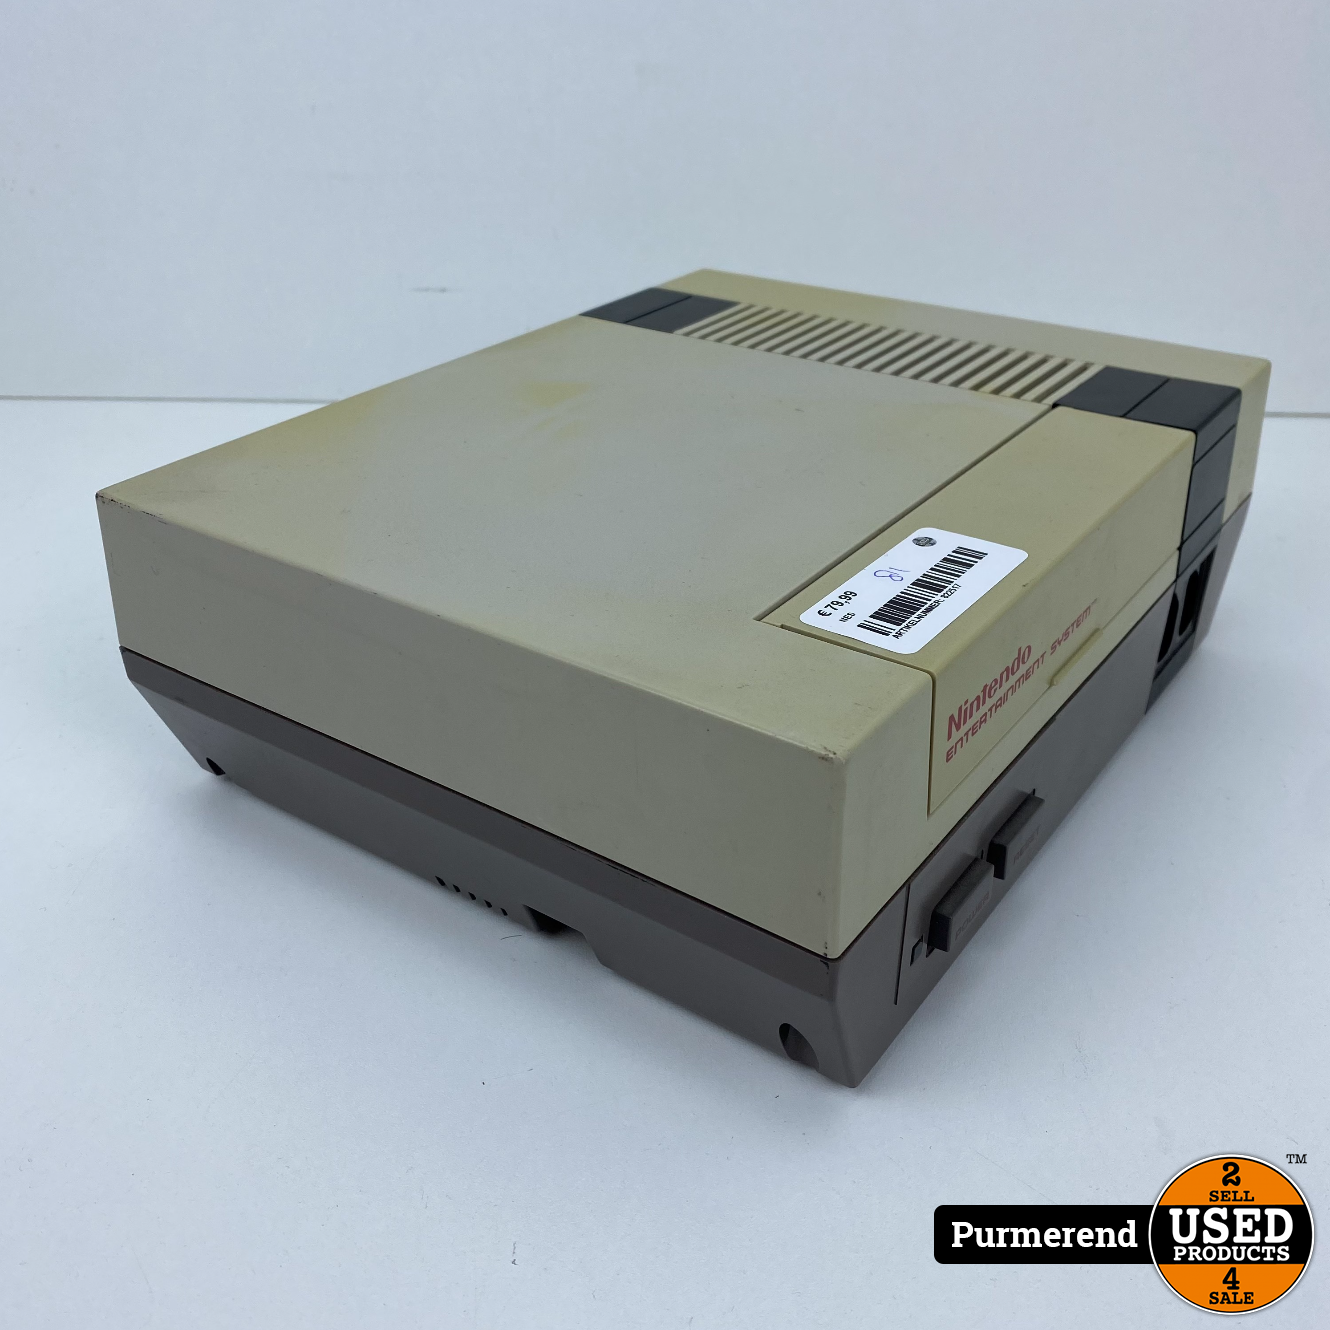 doolhof Beeldhouwwerk Spelen met Nintendo NES Console - Used Products Purmerend